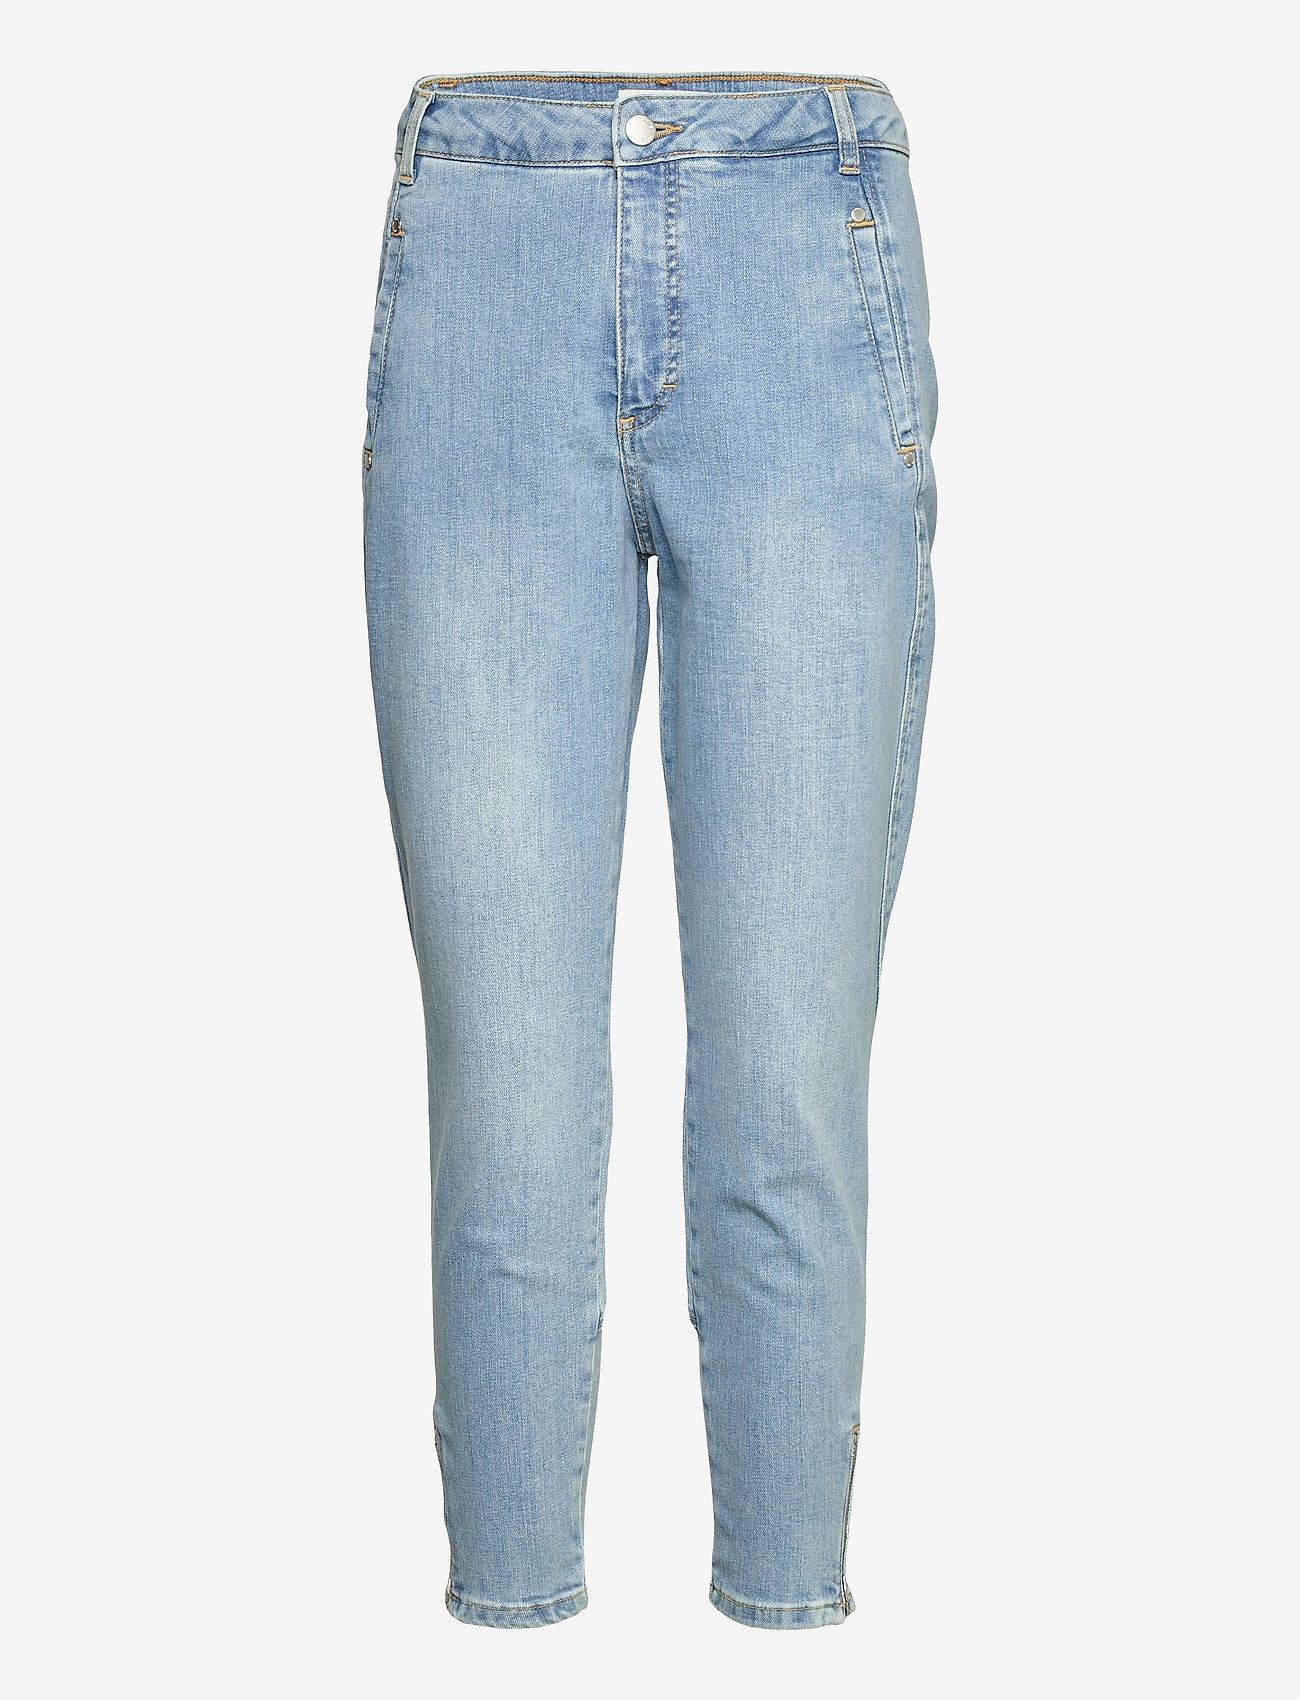 FIVEUNITS - Jolie Zip 241 - slim fit jeans - chalk blue - 0